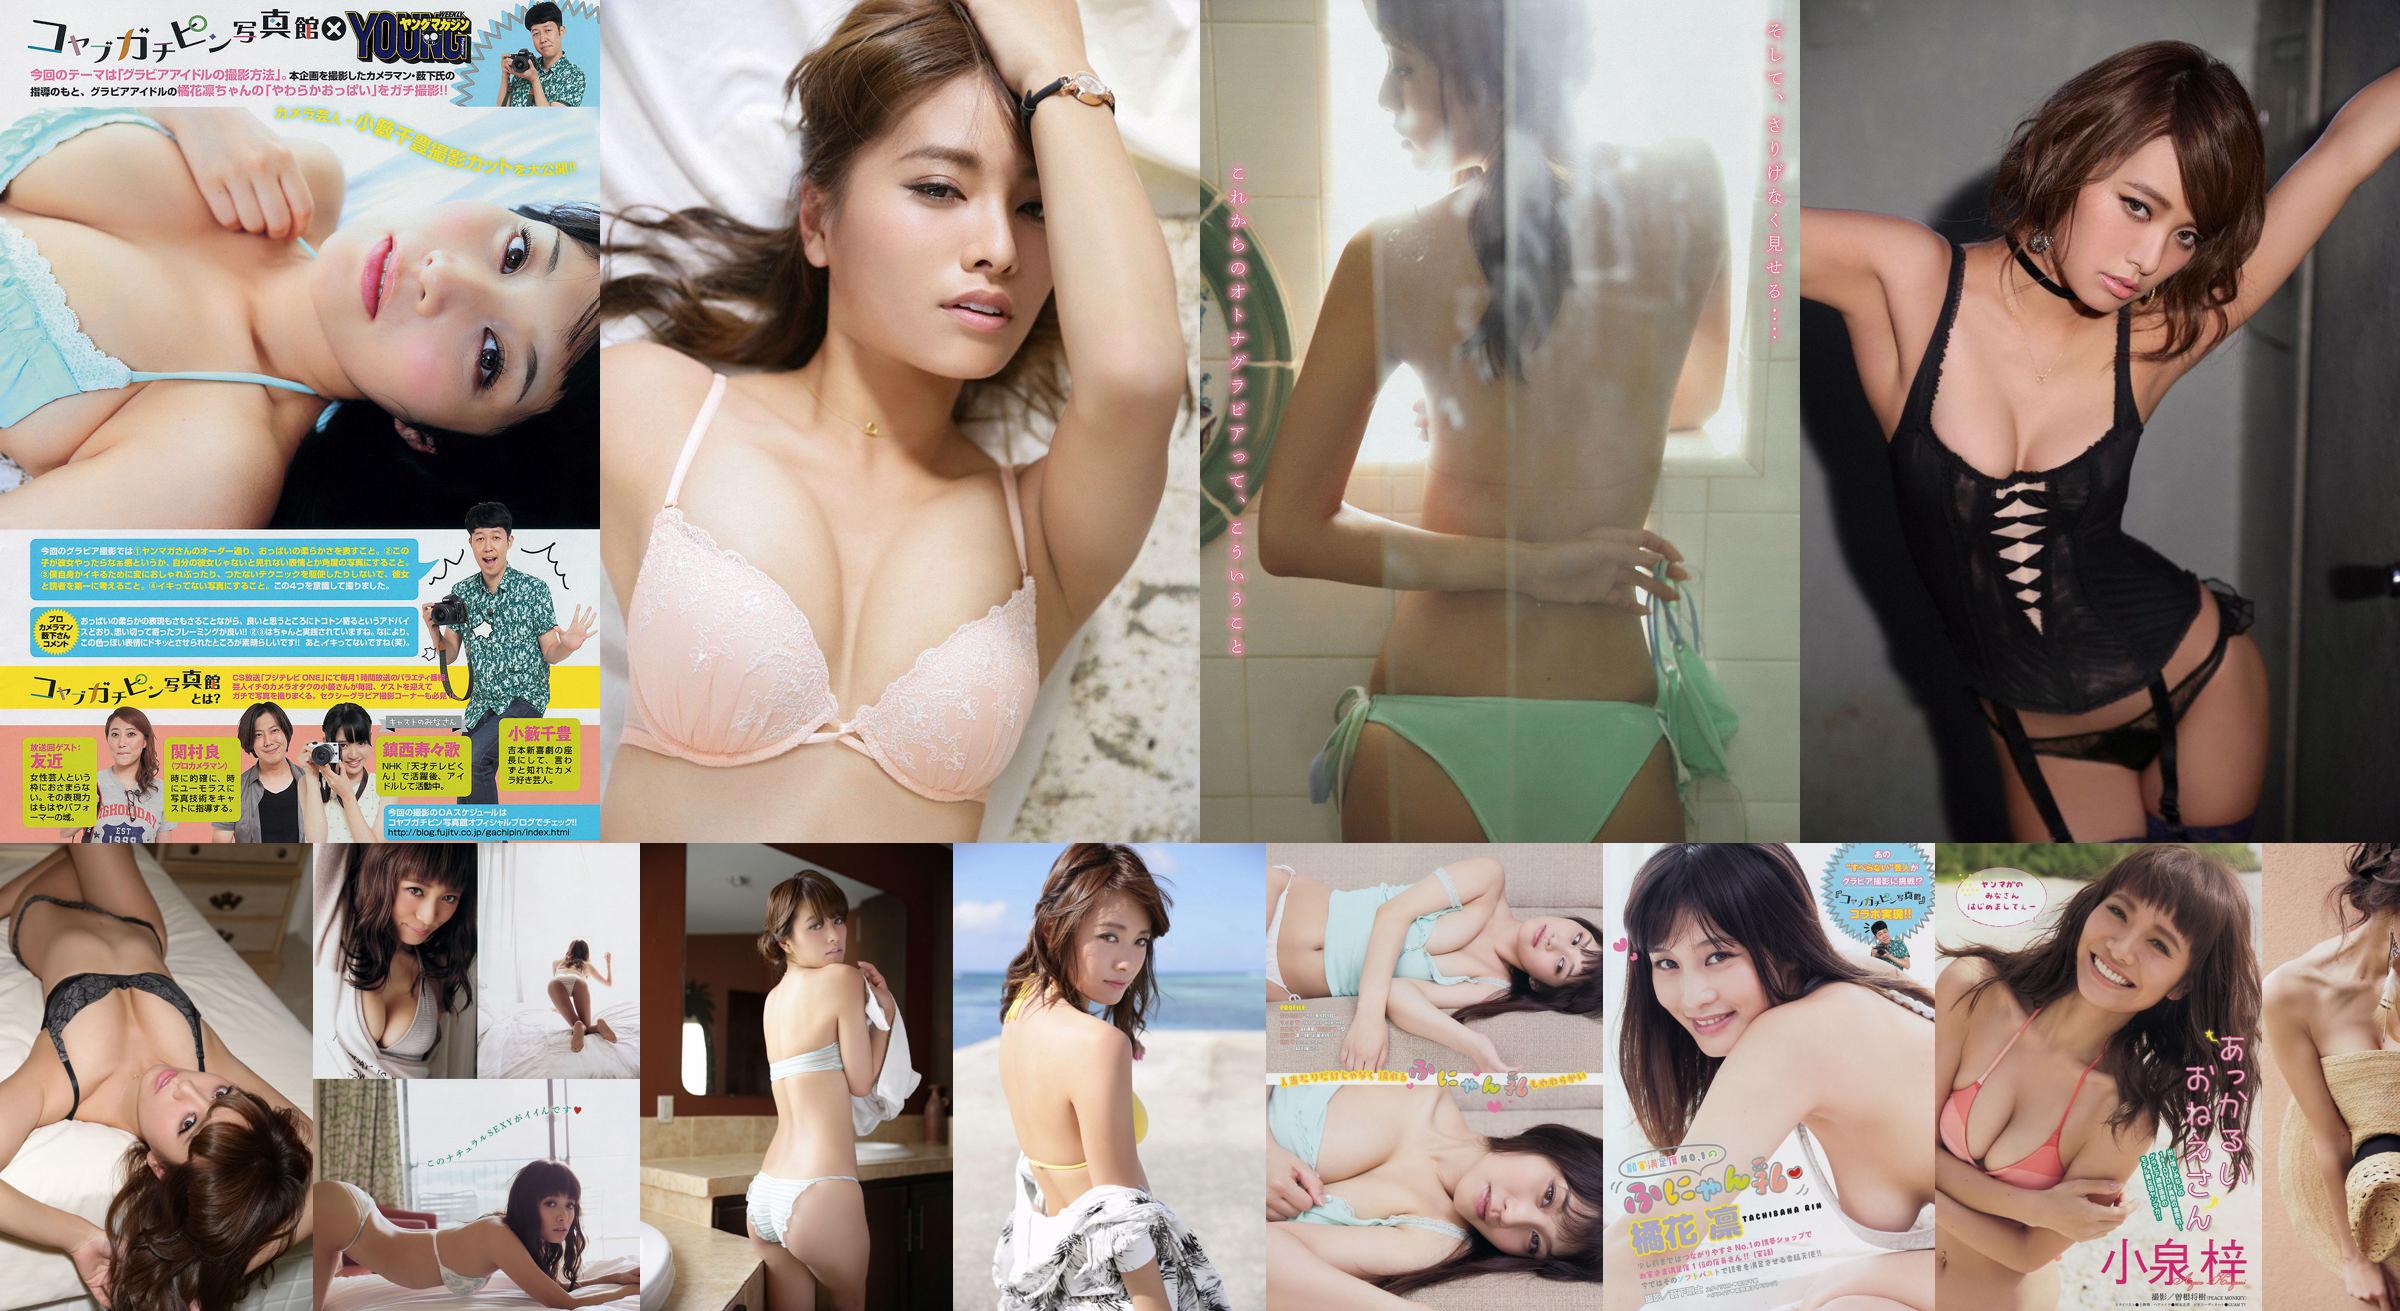 [Young Magazine] Azusa Koizumi Tachibana Rin 2014 No.43 Photo Magazine No.91e11f Pagina 1